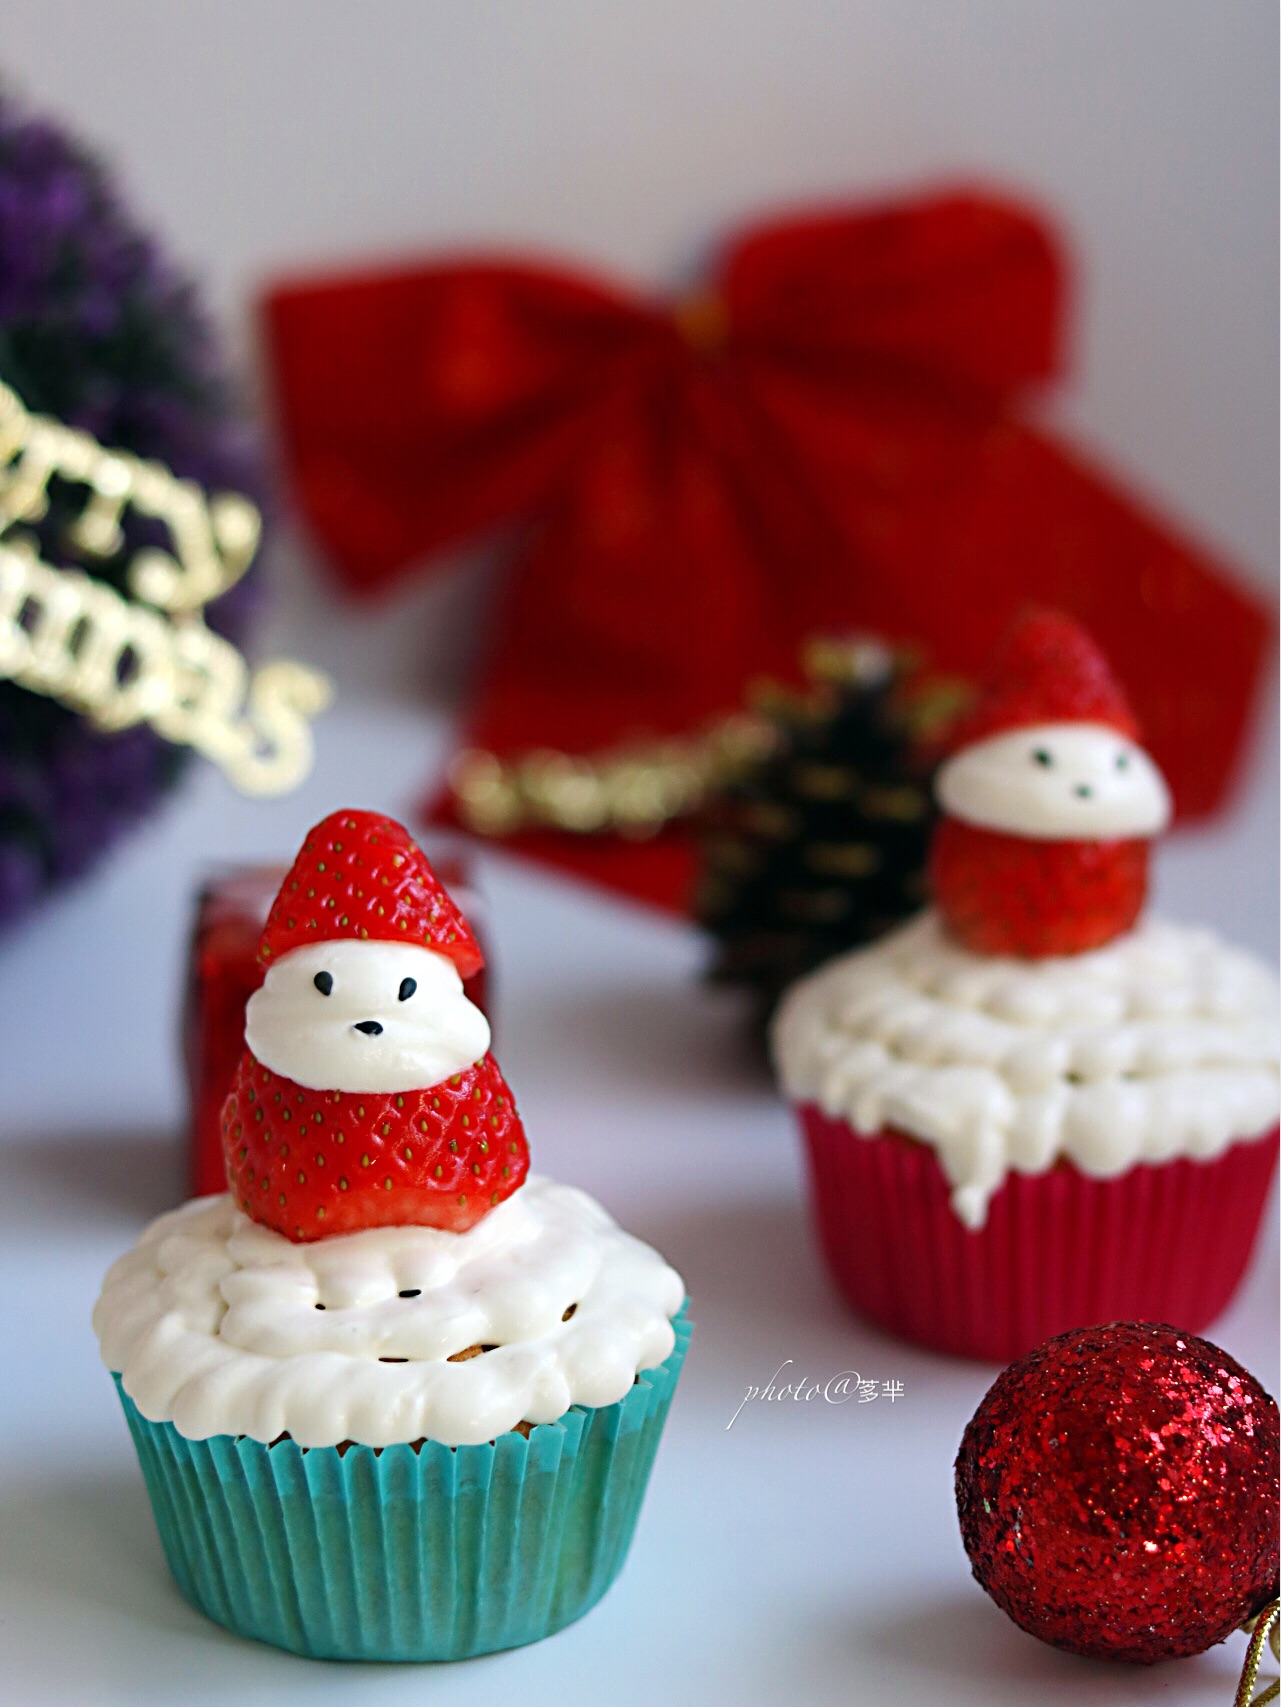 圣诞节假日草莓圣诞老人 库存图片. 图片 包括有 庆祝, 食物, 膳食, 甜甜, 点心, 可口, 午餐, 菜单 - 47213761